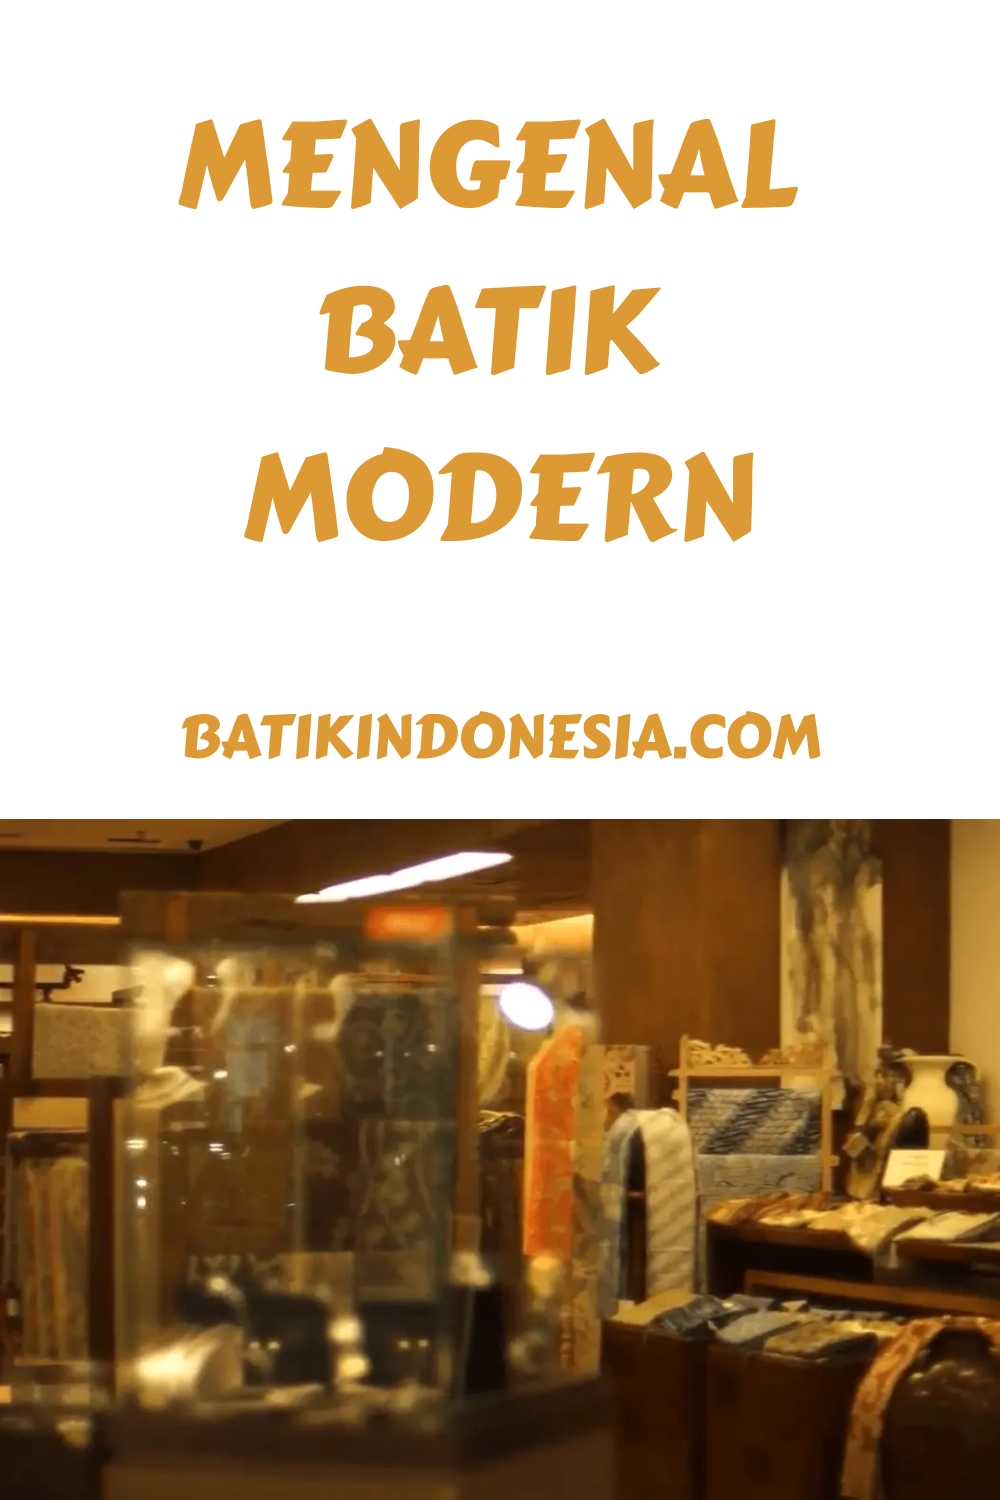 Mengenal Batik Modern generated pin 521